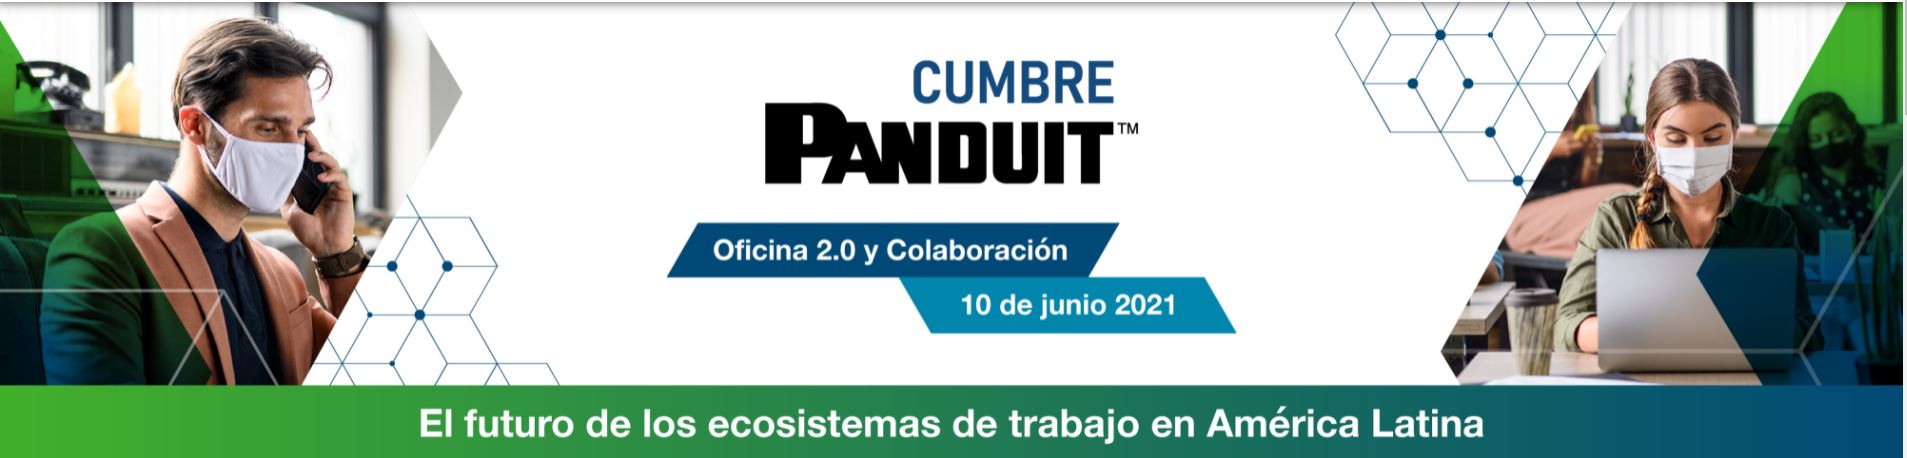 Cumbre Panduit: Oficina 2.0 y Colaboración